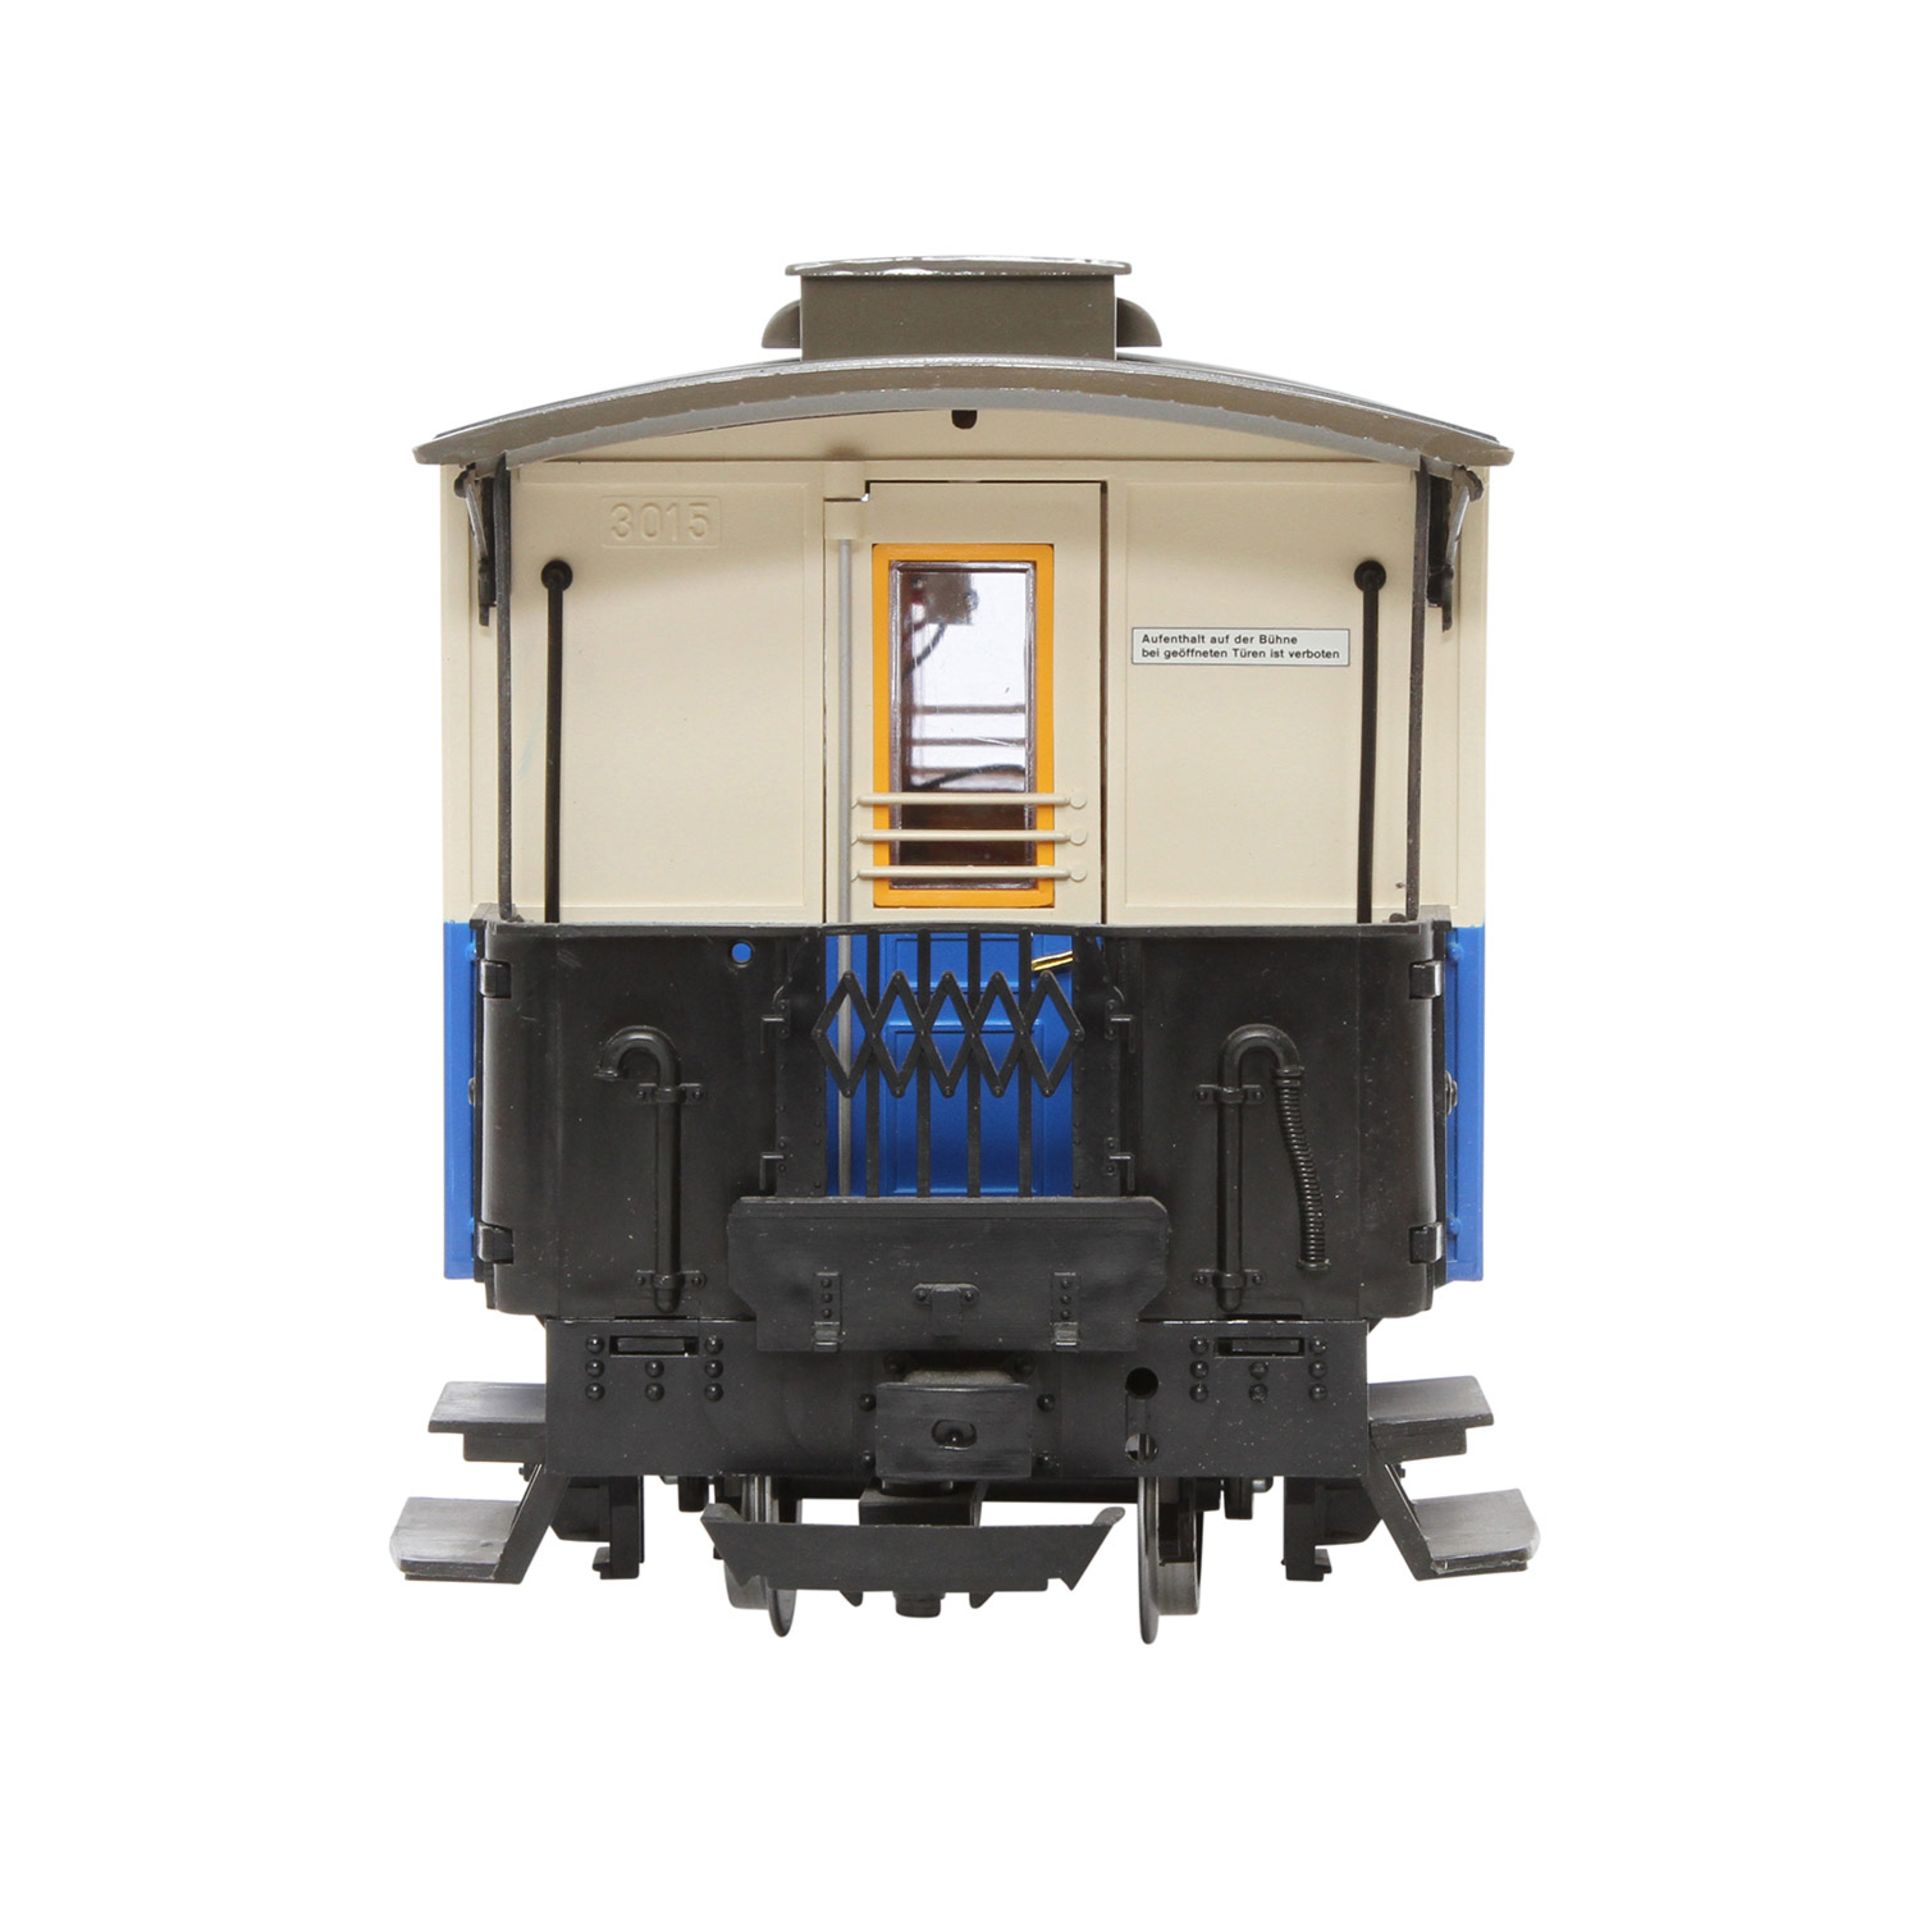 LGB Personenwagen 3015, Spur G, blau/beige, 2-achsig, 2.Kl., 2 Türen zum Öffnen, Oberlichtaufsatz, - Image 5 of 8